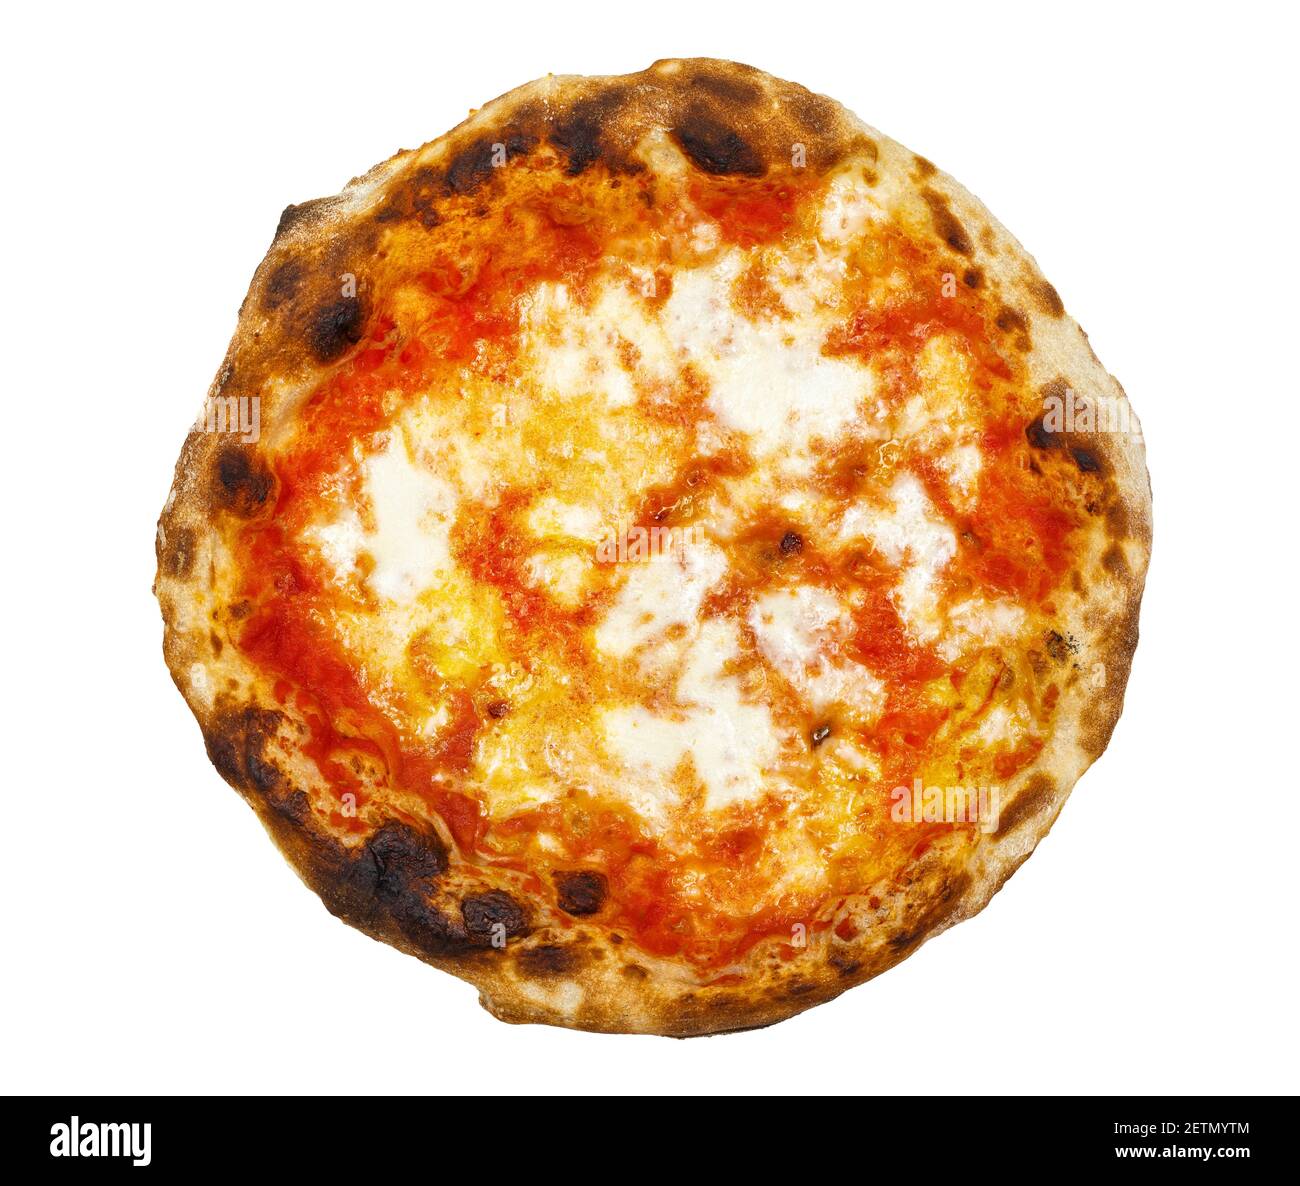 Italienische neapolitanische Pizza Margherita Tomate und Mozzarella Käse isoliert auf Weißer Hintergrund Stockfoto